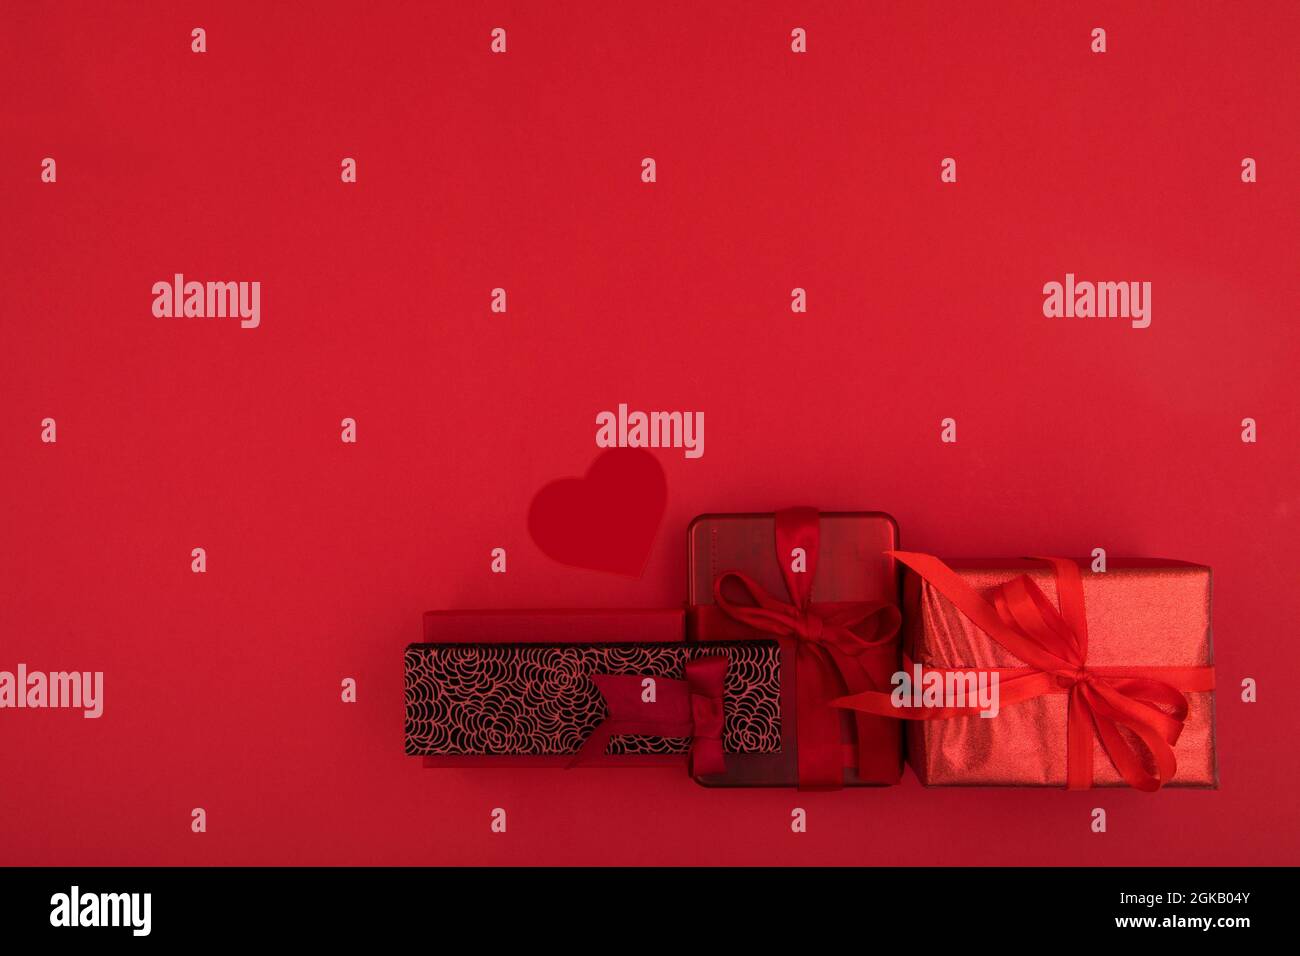 Vista dall'alto composizione di vari regali natalizi avvolta in carta con nastri e sfere decorative poste su una superficie rossa brillante con spazio vuoto Foto Stock